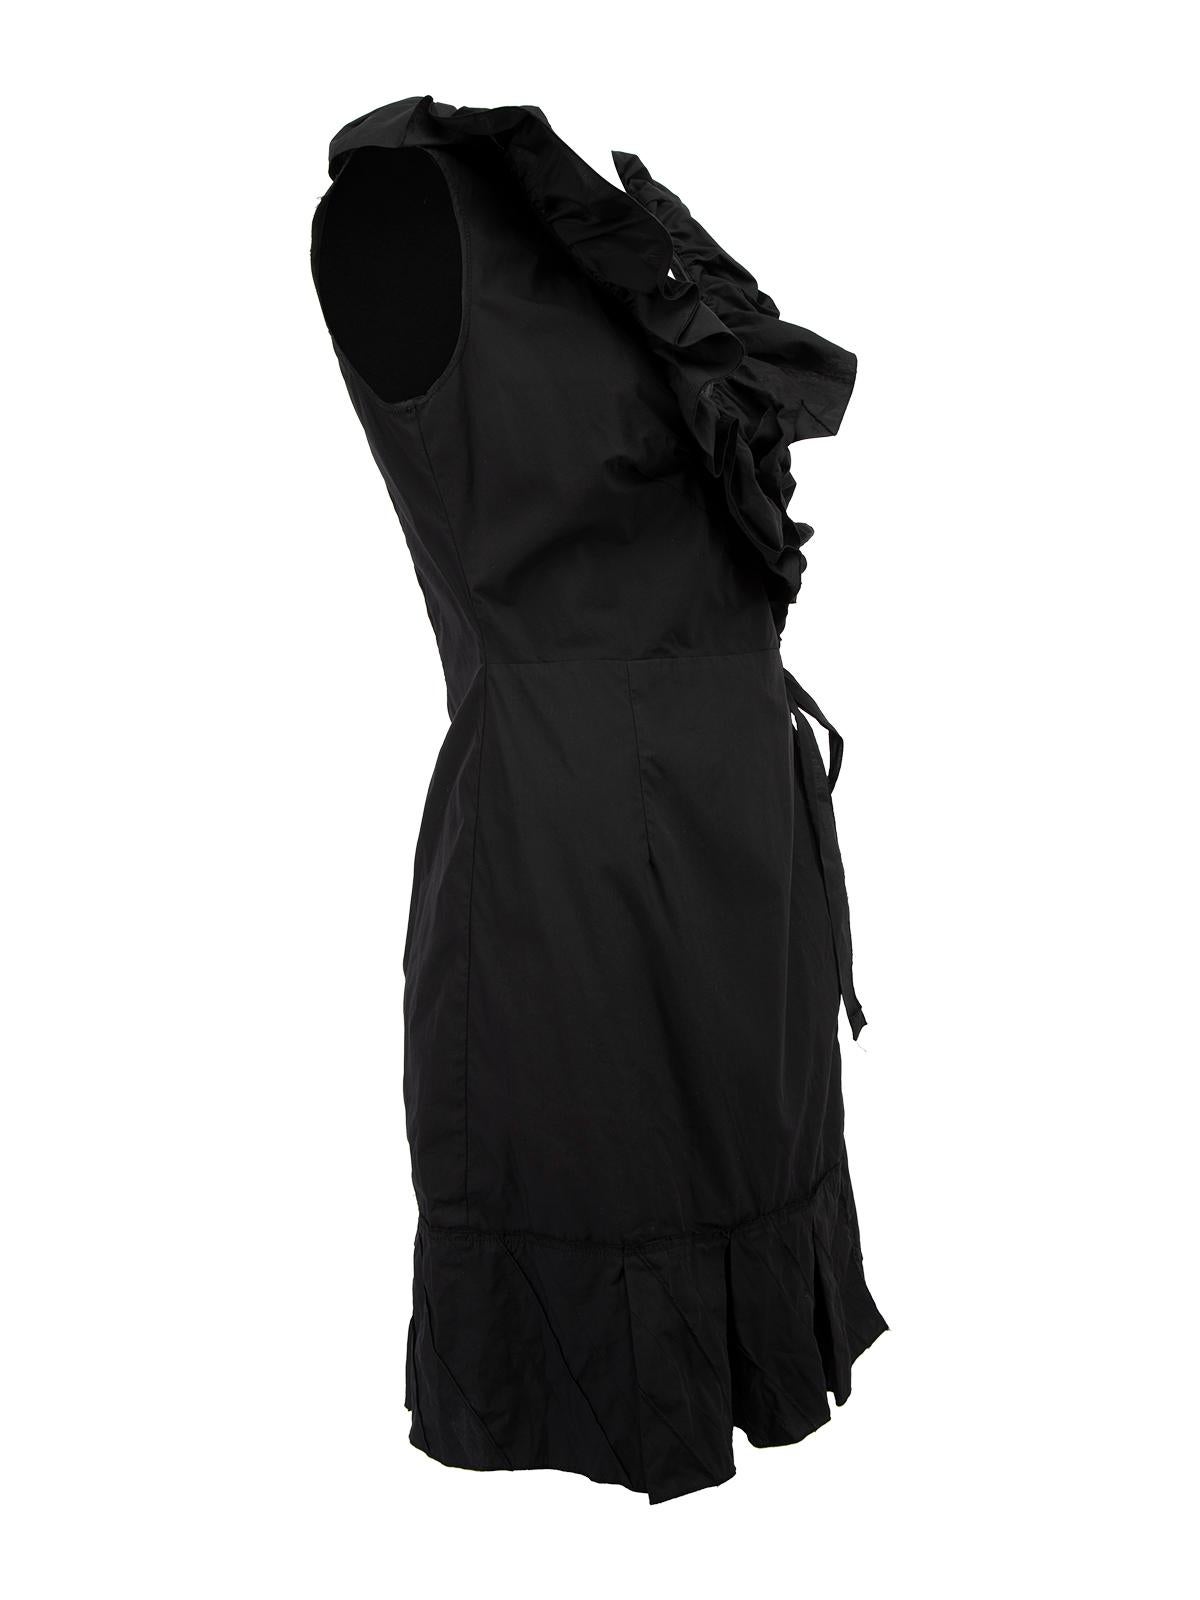 L'ÉTAT est très bon. L'usure minimale de la robe est évidente. Très peu de fils détachés sur les détails de la robe à volants et sur l'ensemble de la robe de cet article Prada d'occasion. Détails Robe enveloppante en coton noir Forme ajustée Sans